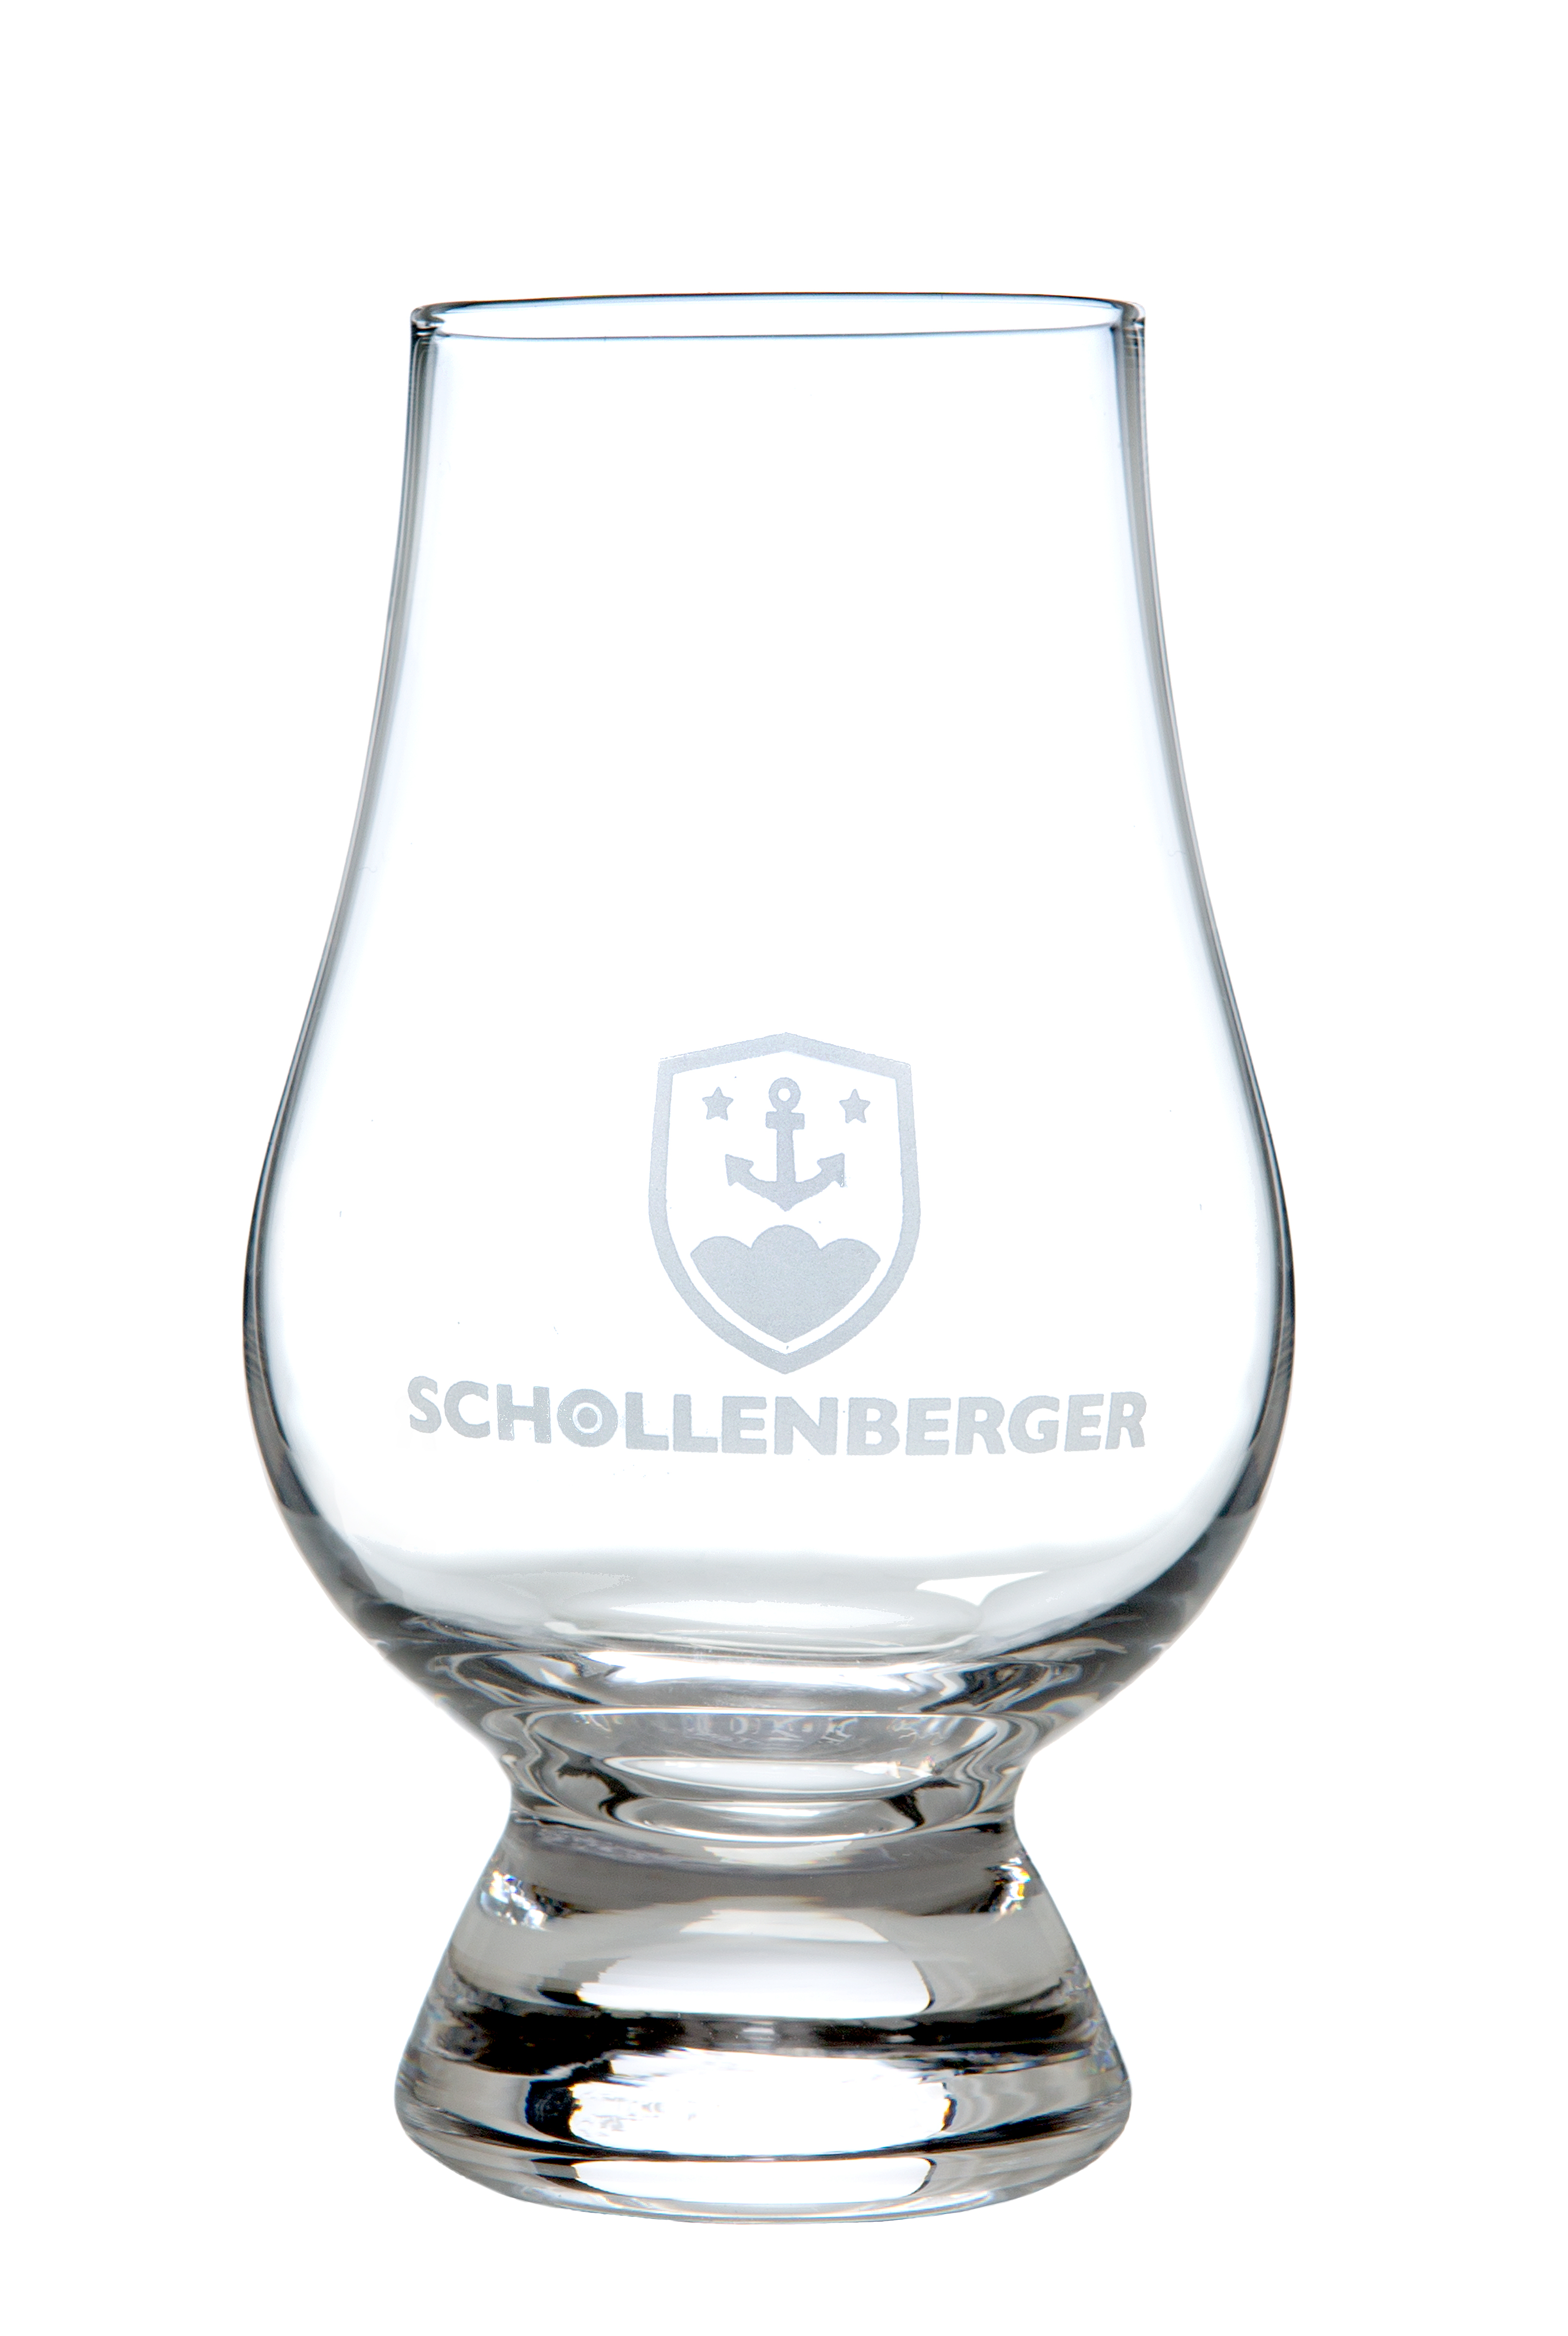 Glencairn Tasting Glas Schollenberger